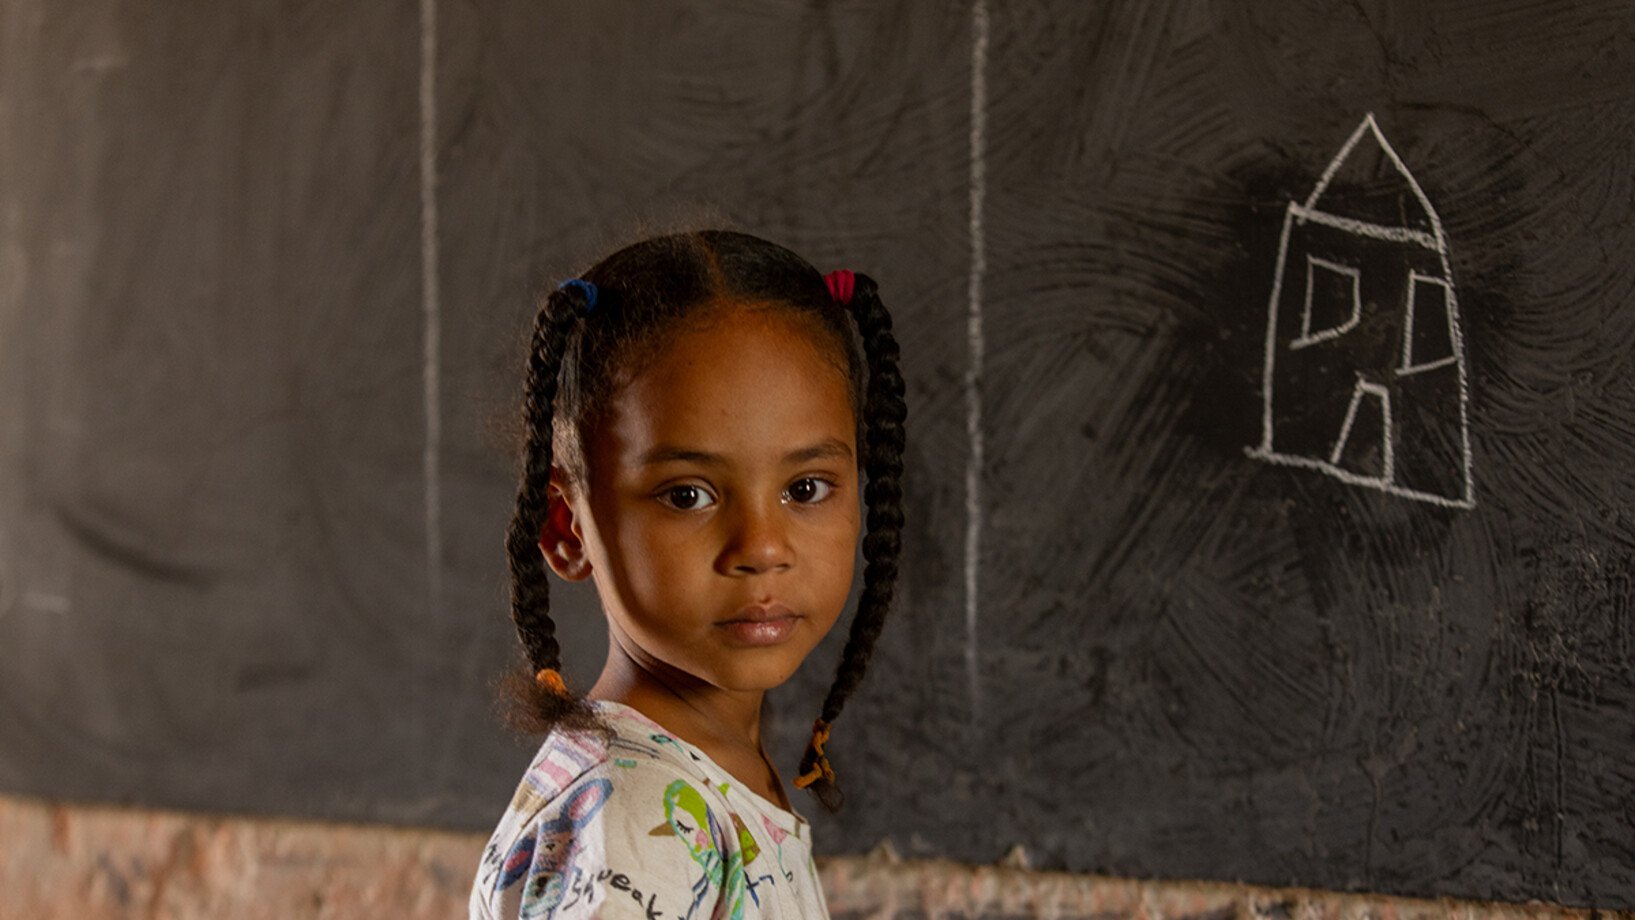 Ein kleines Mädchen aus dem Sudan steht vor einer Tafel.